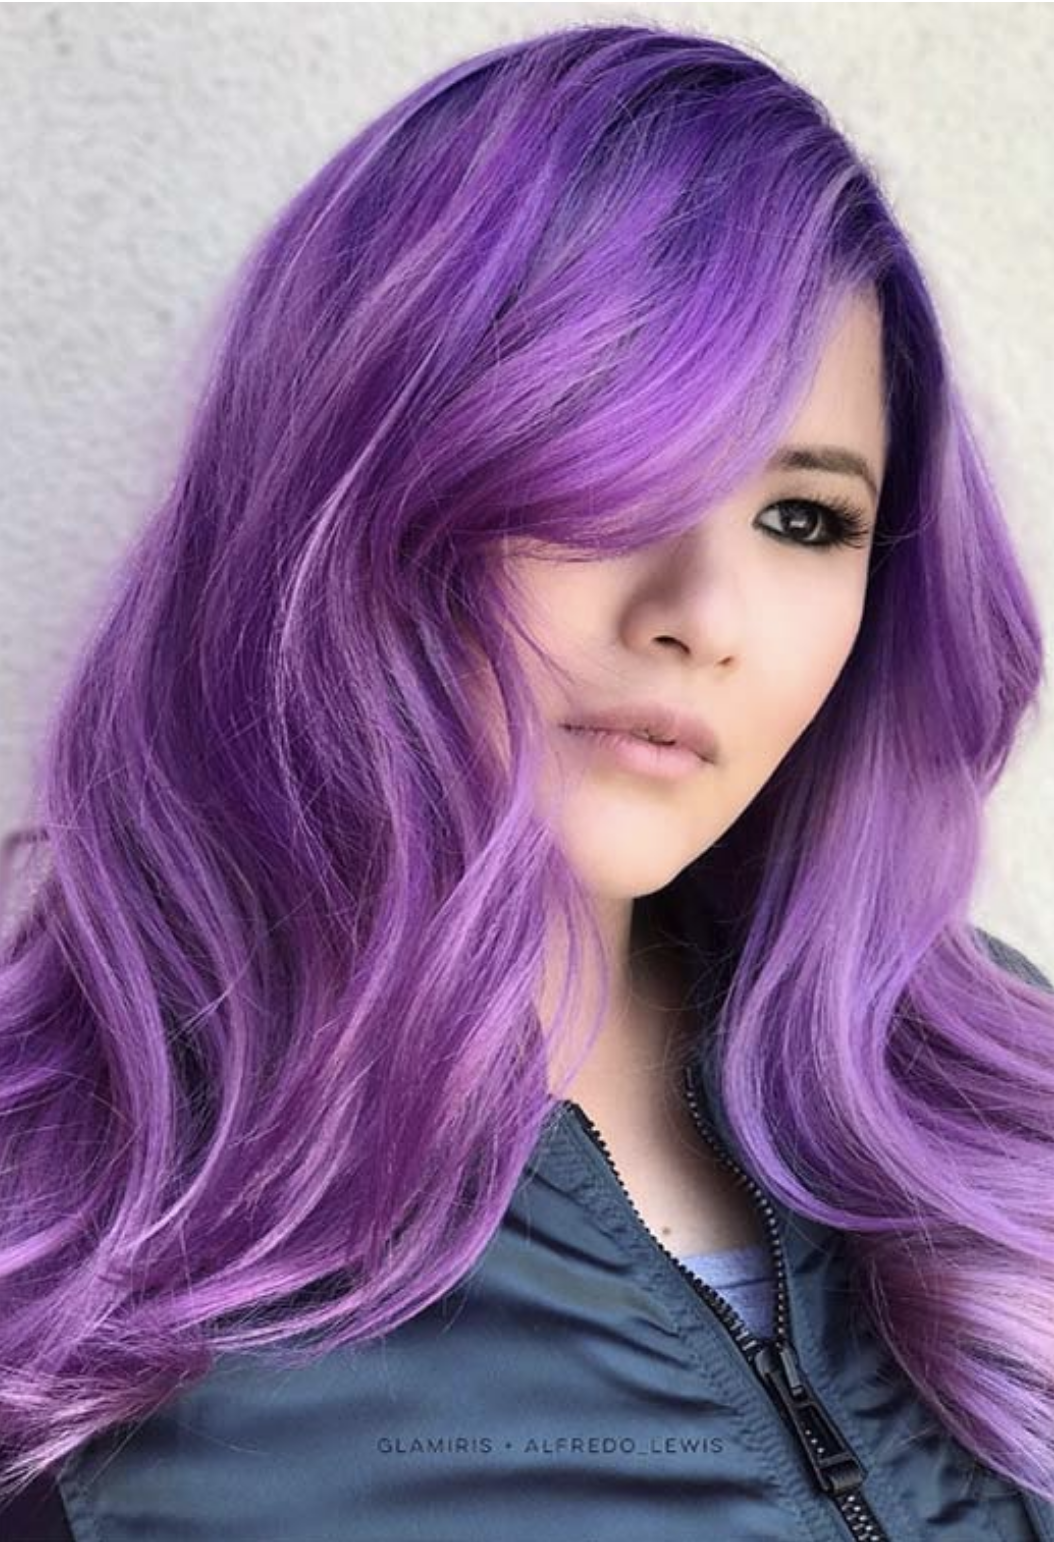 Ева Элфи с фиолетовыми волосами